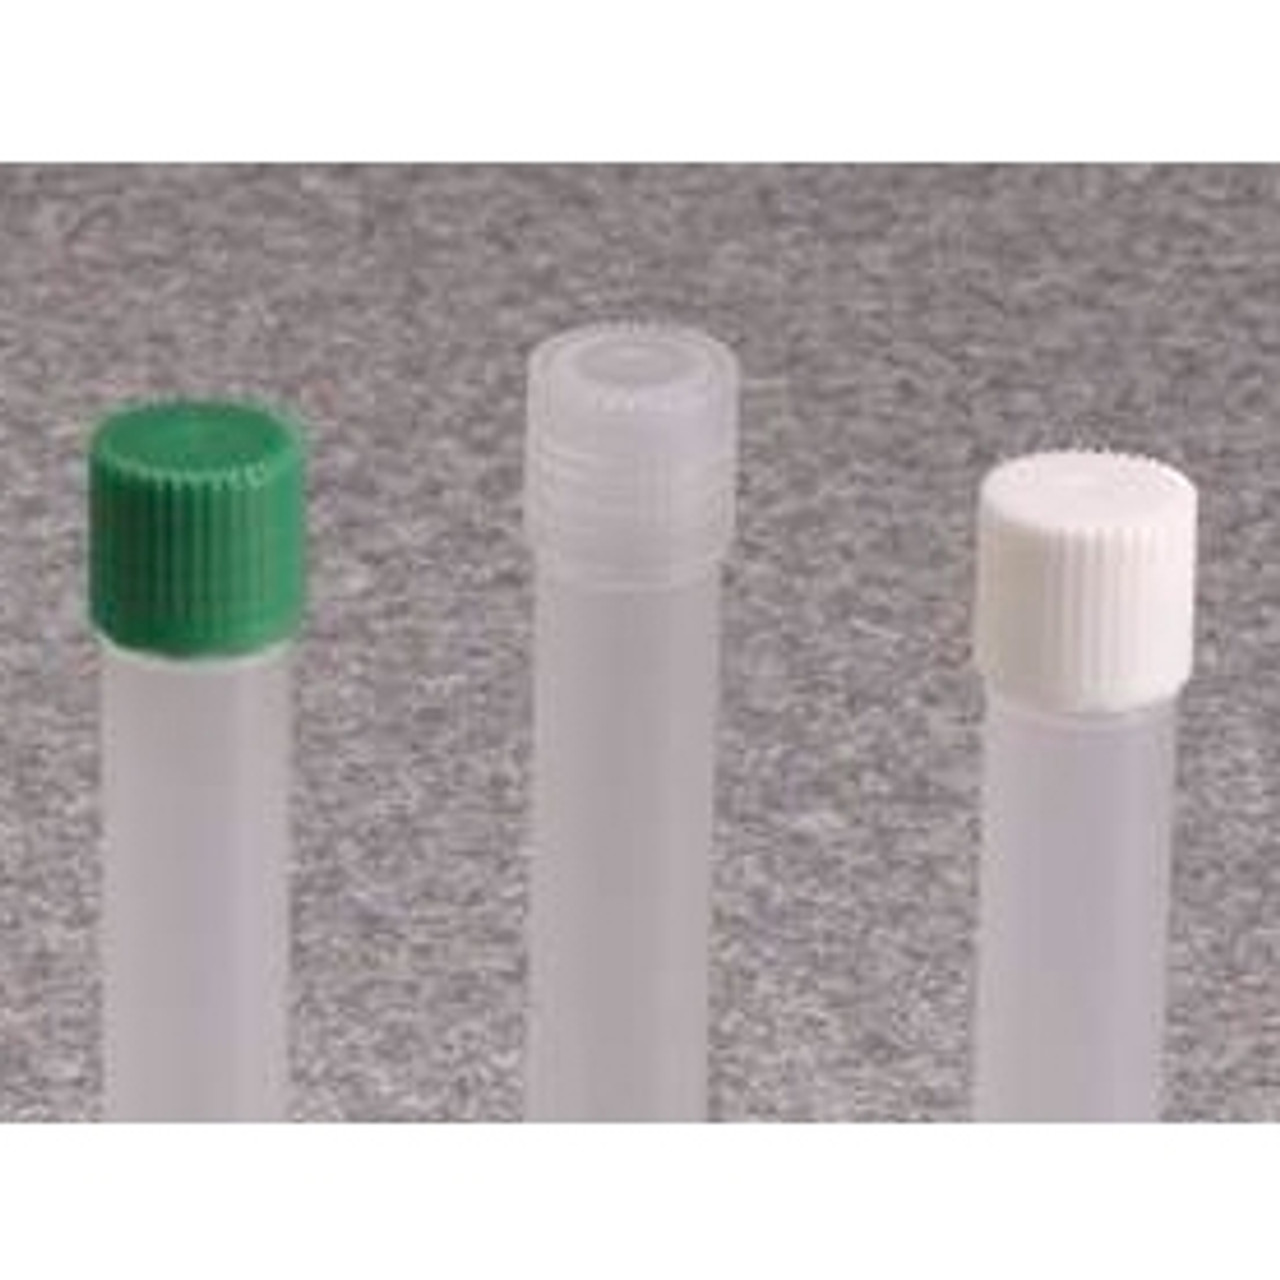 Nalgene® 342826-0110 13mm Caps for 4.5mL Micro Vials, Sterile, PPCO, case/1000